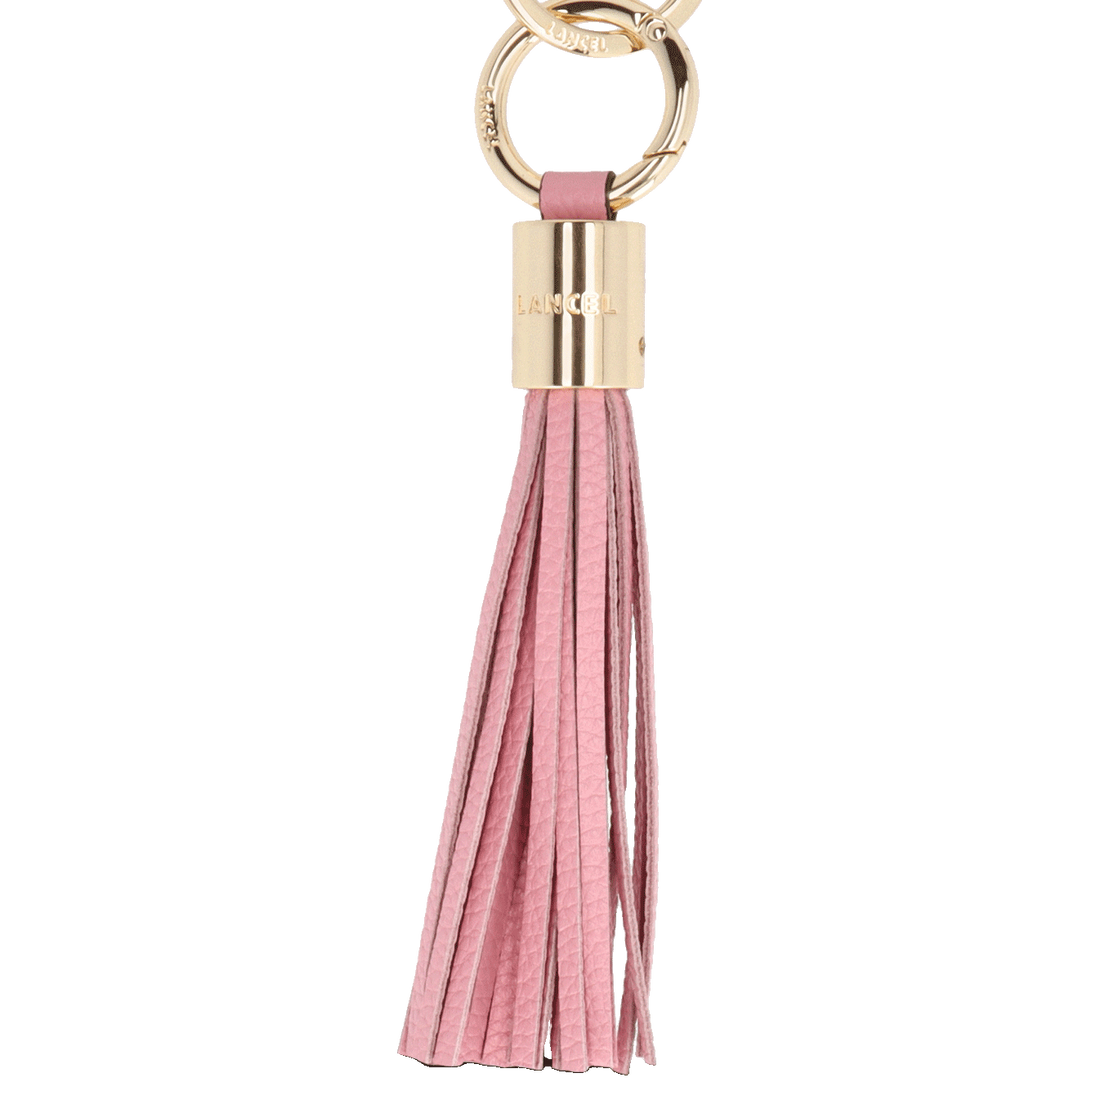 Porte clés - Premier Flirt - Pompon magnolia